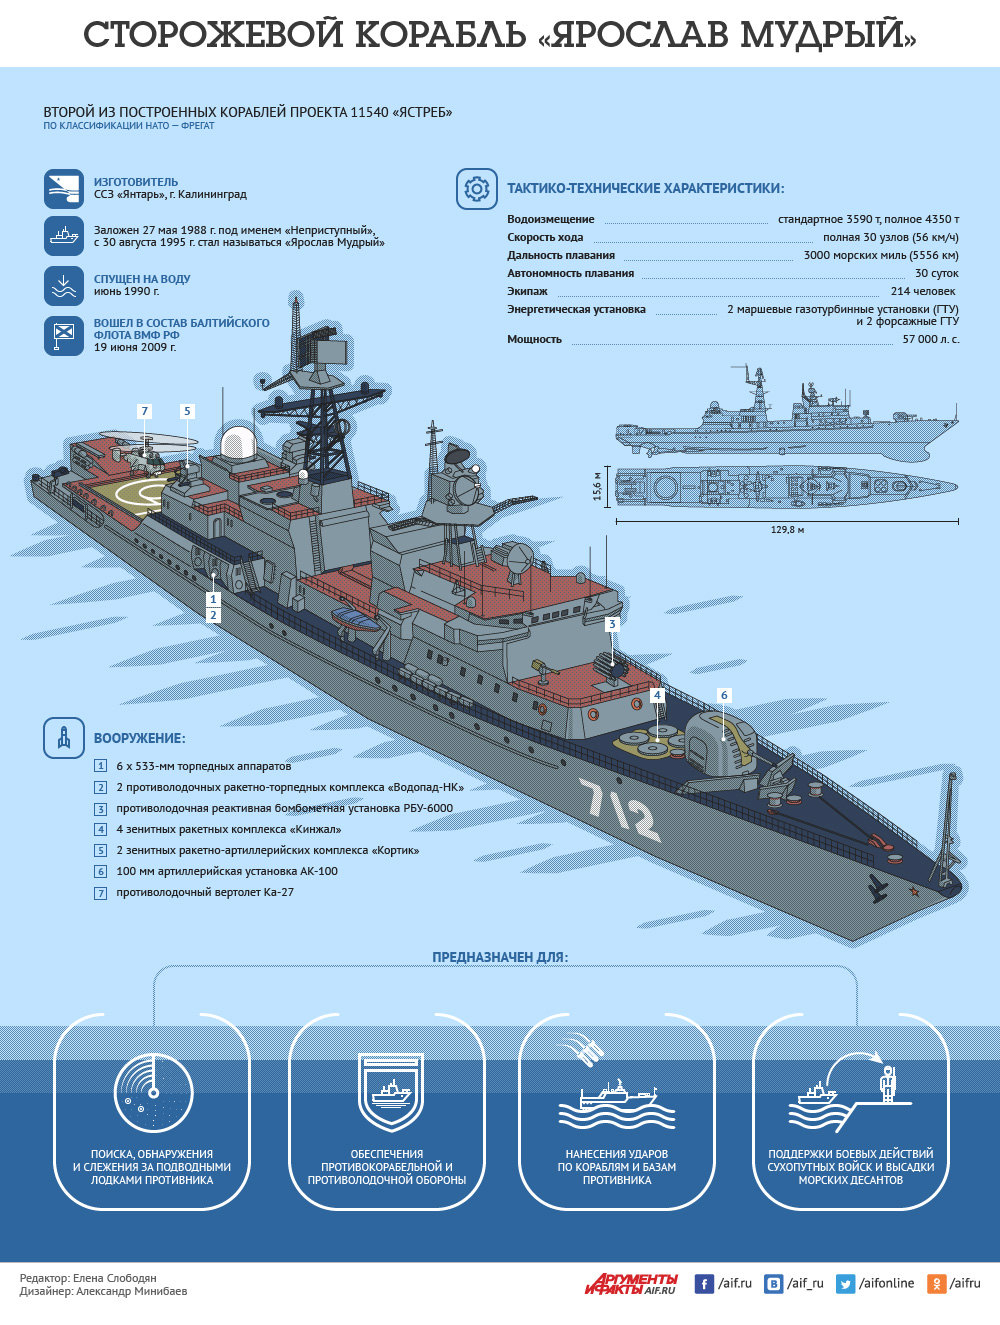 Сторожевой корабль «Ярослав Мудрый». Инфографика